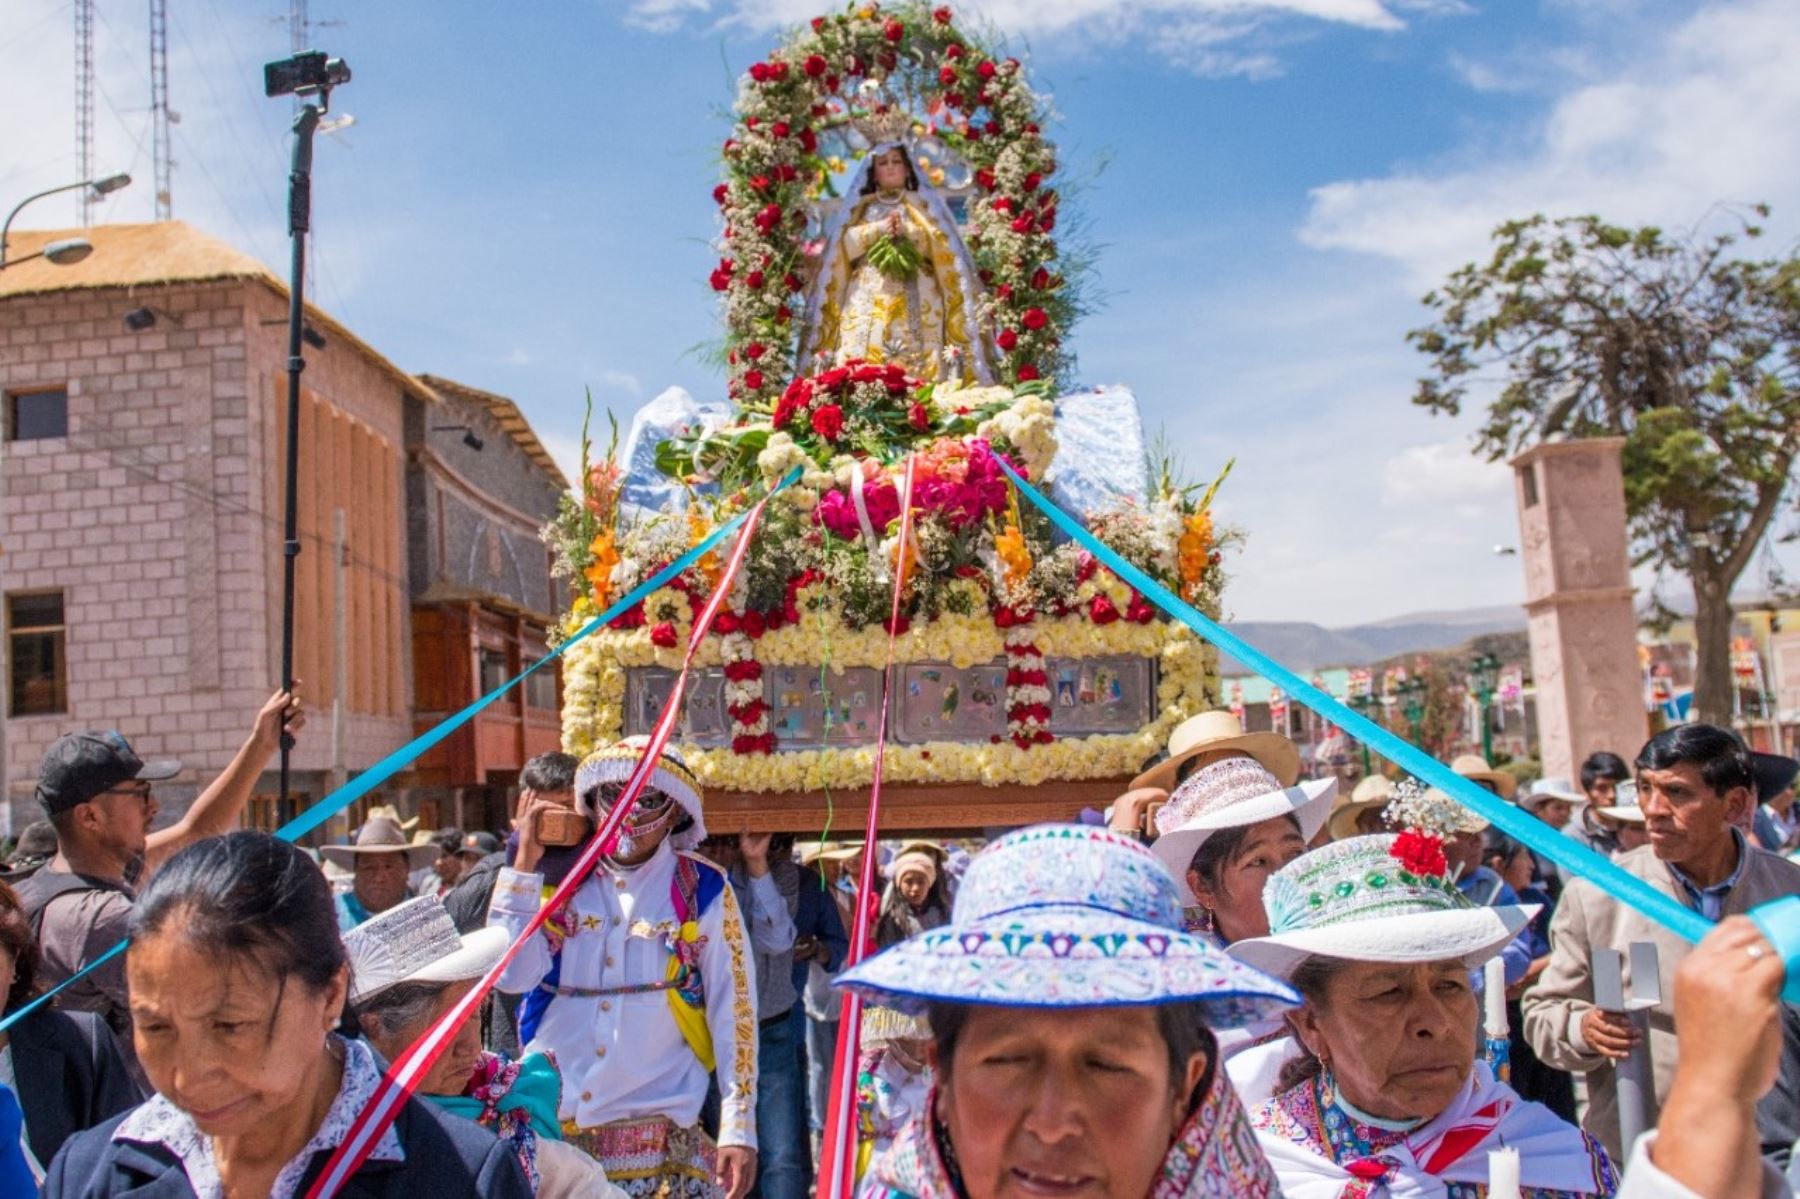 La fiesta de la Virgen de la Inmaculada Concepción es el evento más importante del valle del Colca y se celebra al ritmo del wititi. Foto: Ytúquéplanes